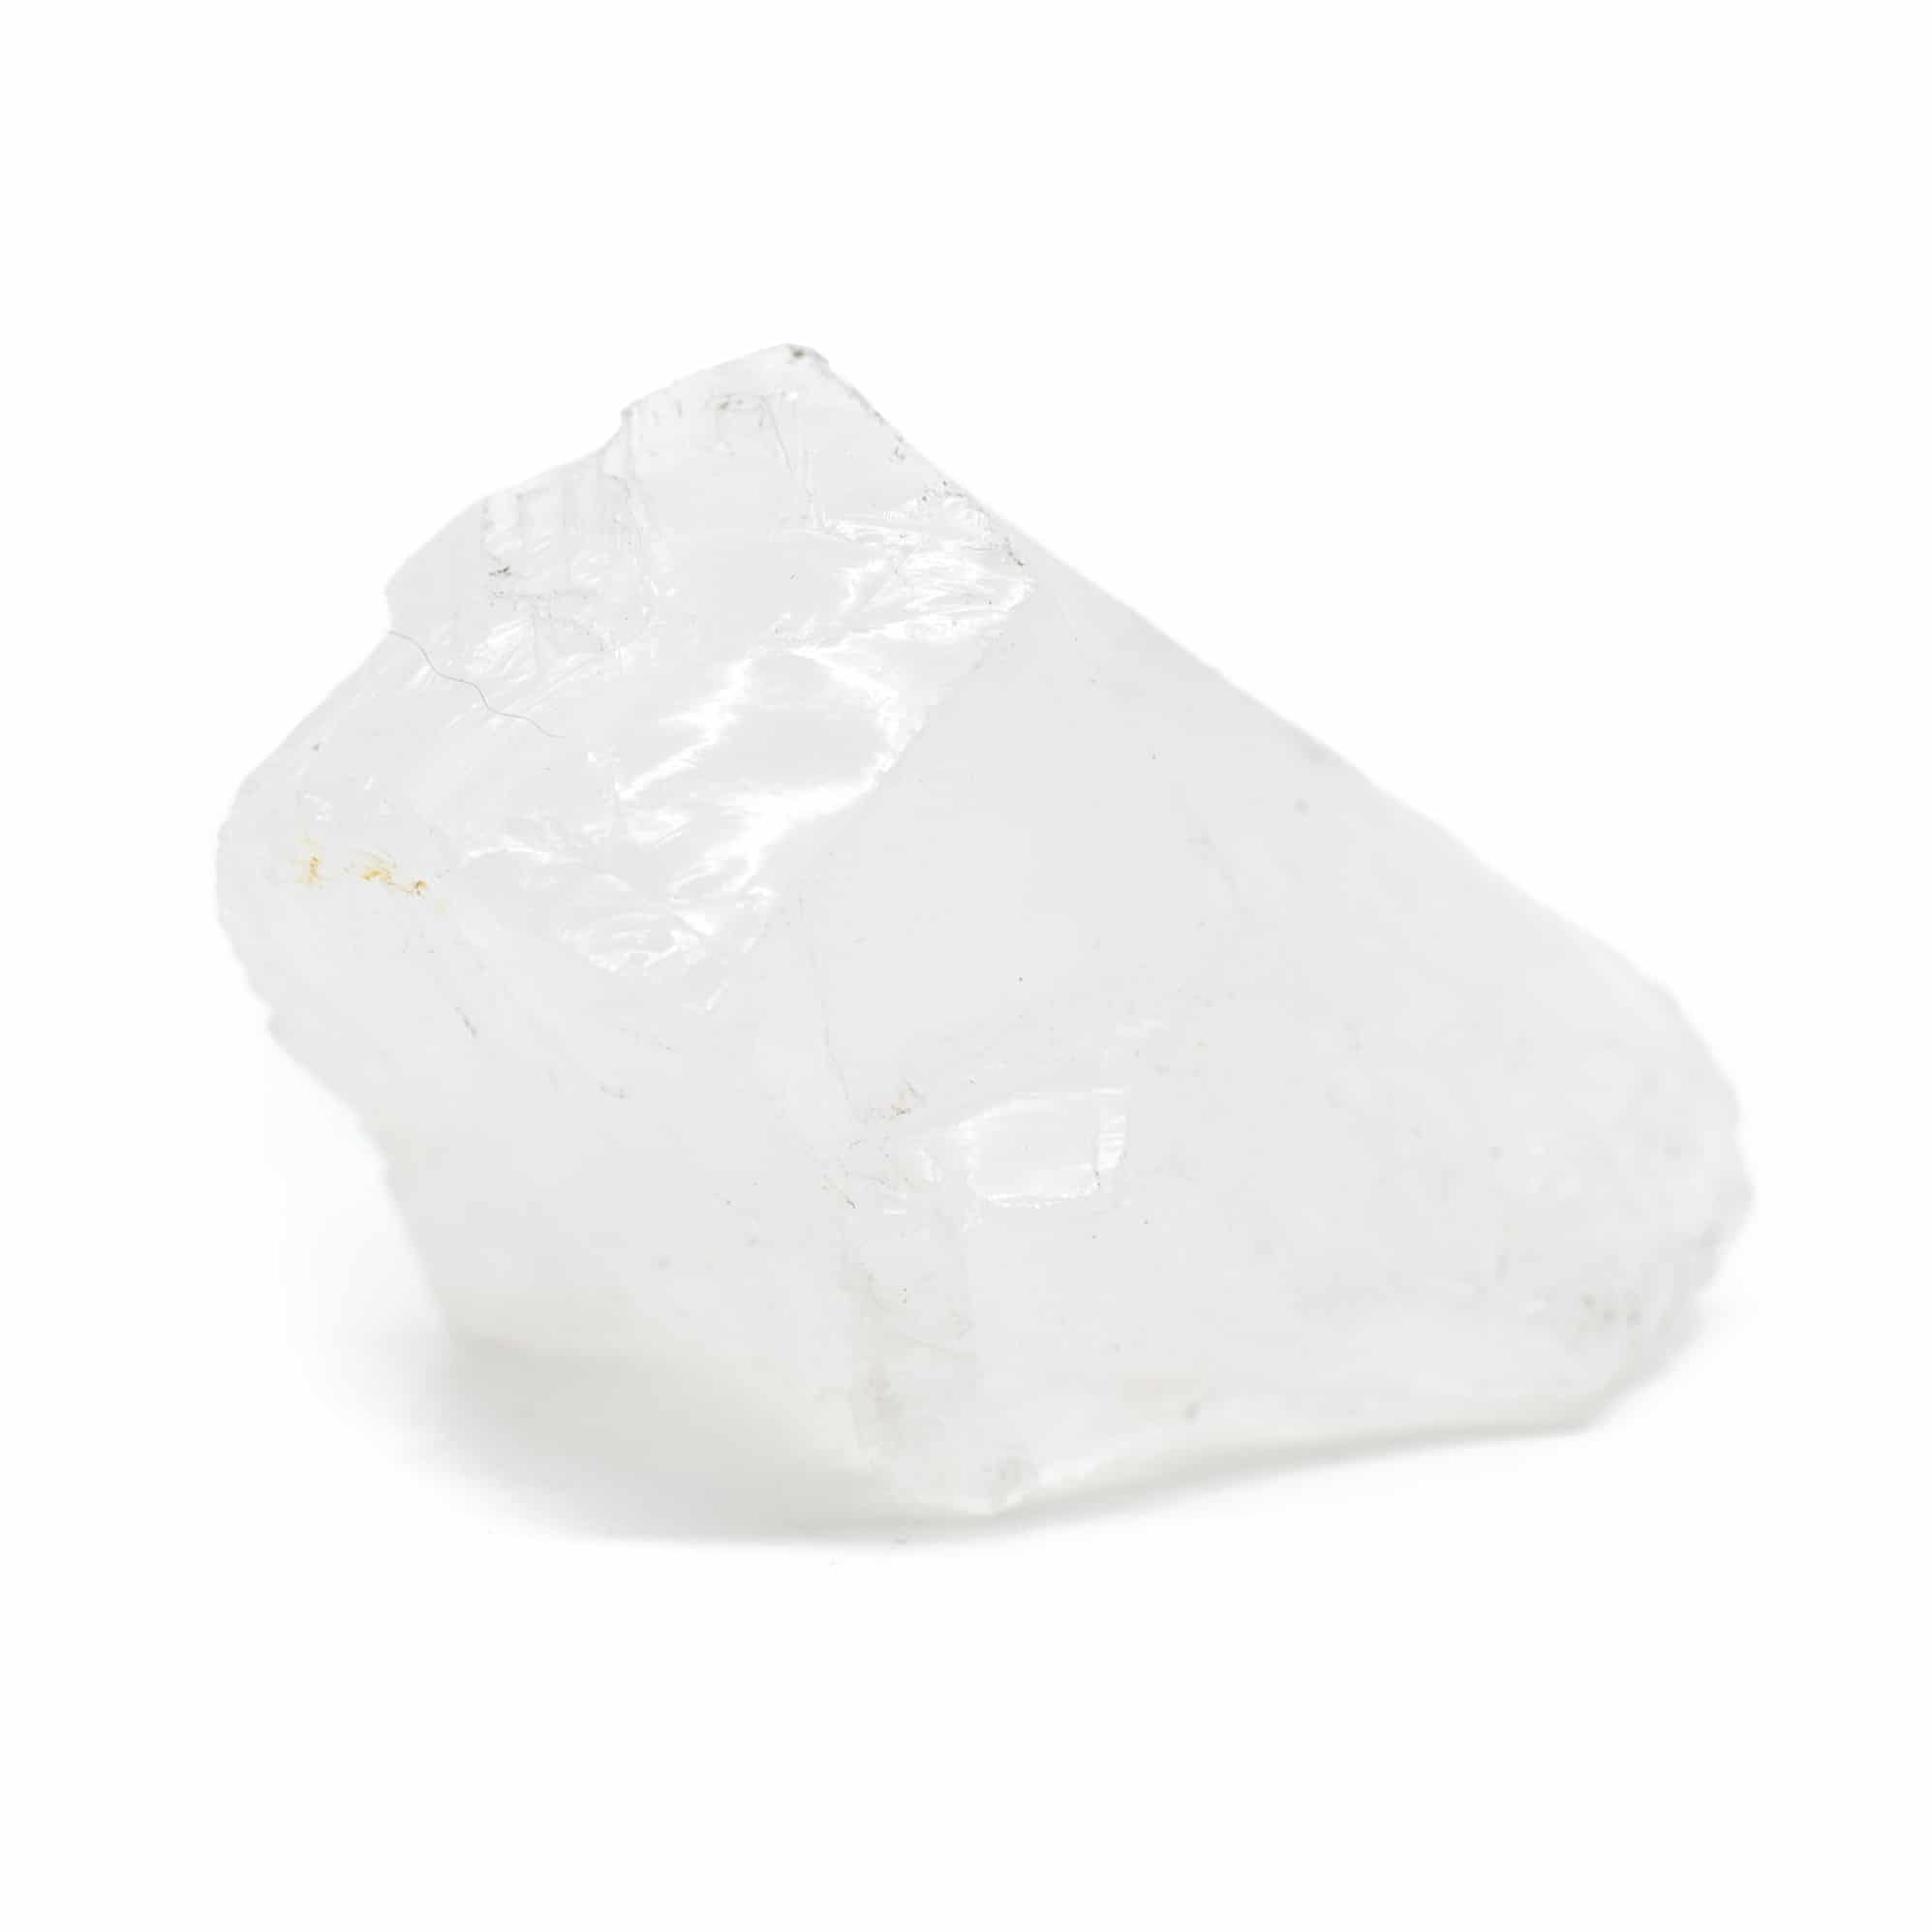 Rå bergkristall 3 - 6 cm